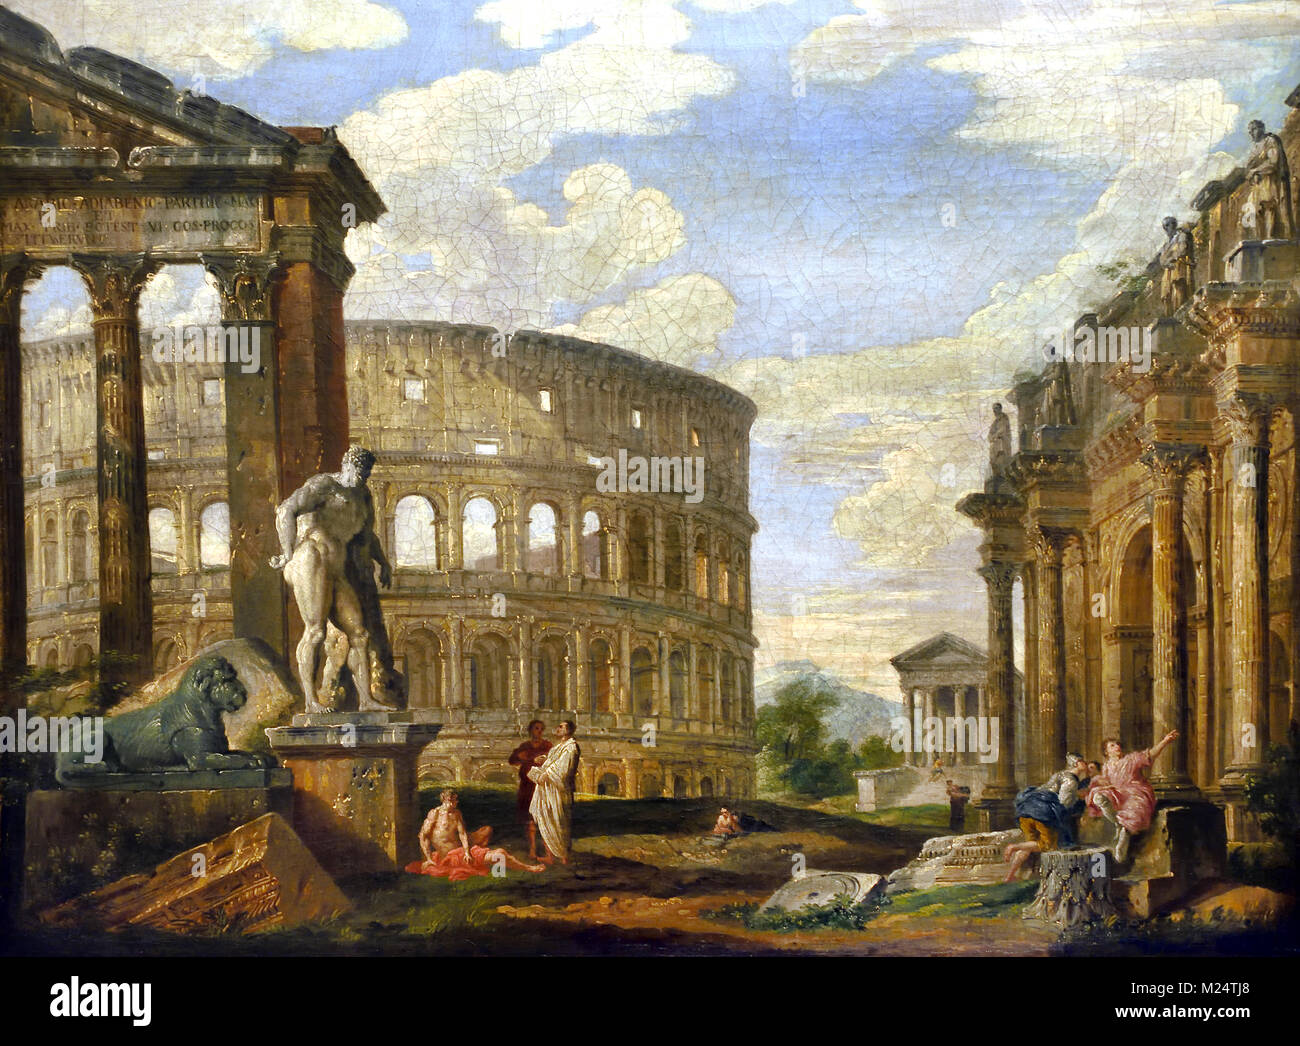 Ruinen des antiken Rom 1725 Giovanni Paolo Panini oder Pannini 1691 - 1765 Italien Italienisch (Kolosseum, Riese, Amphitheater) Stockfoto